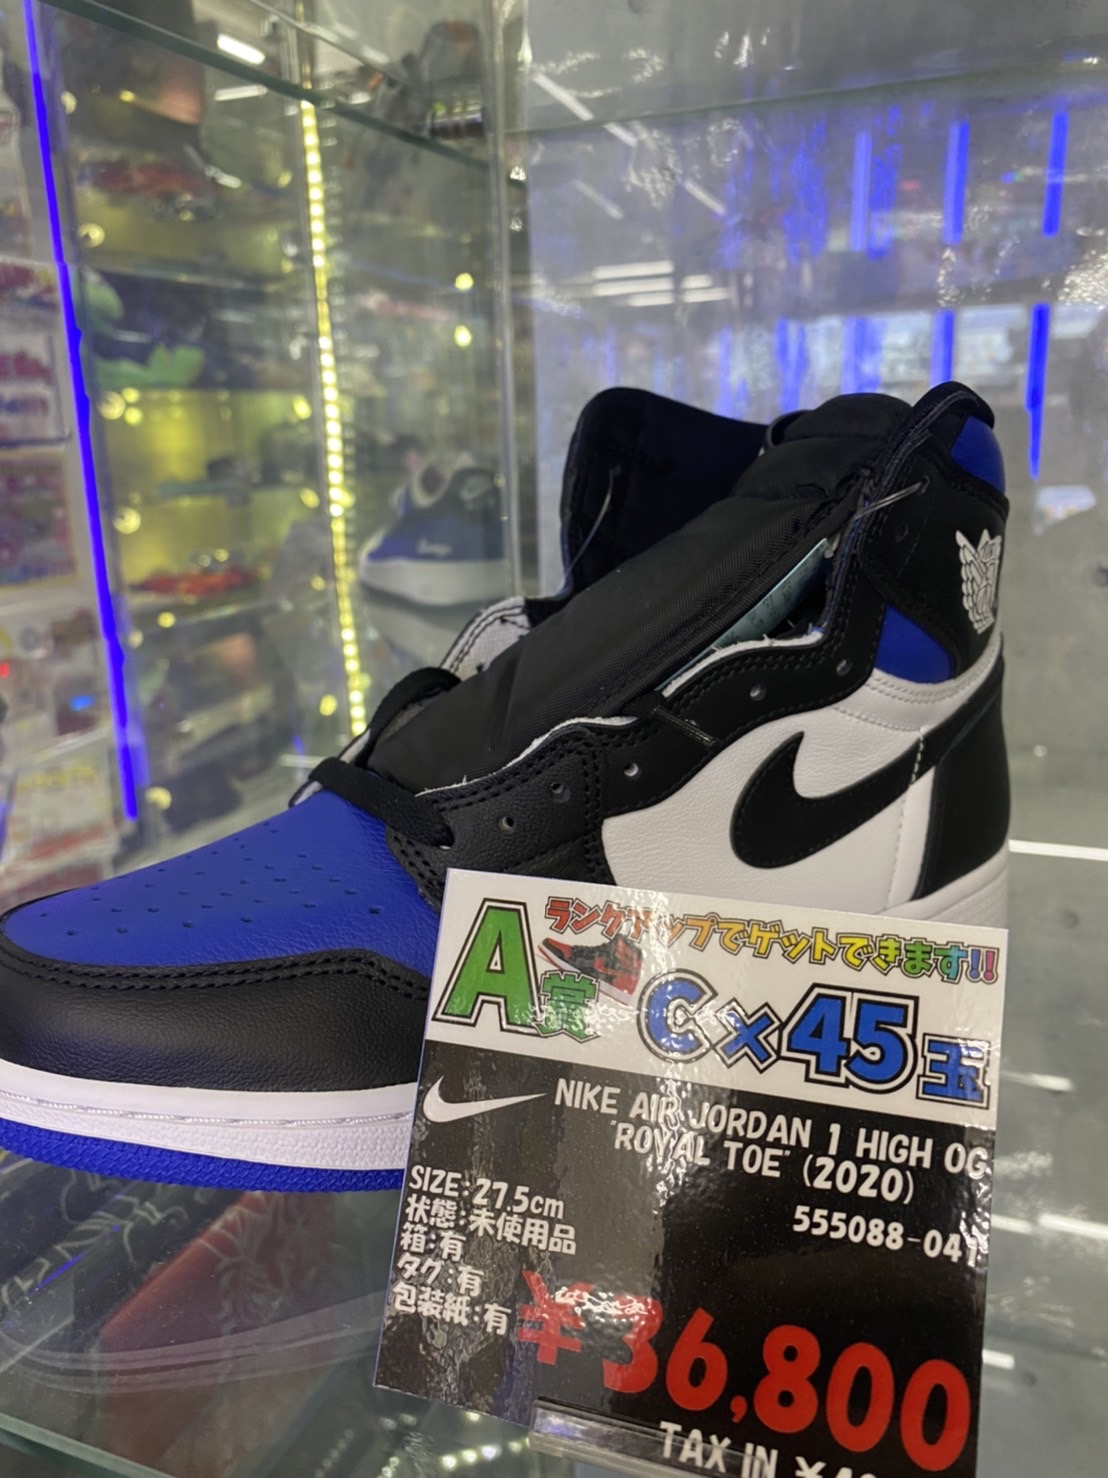 Nike Air Jordan 1 Retro High OG “Royal Toe”(2020) 555088-041